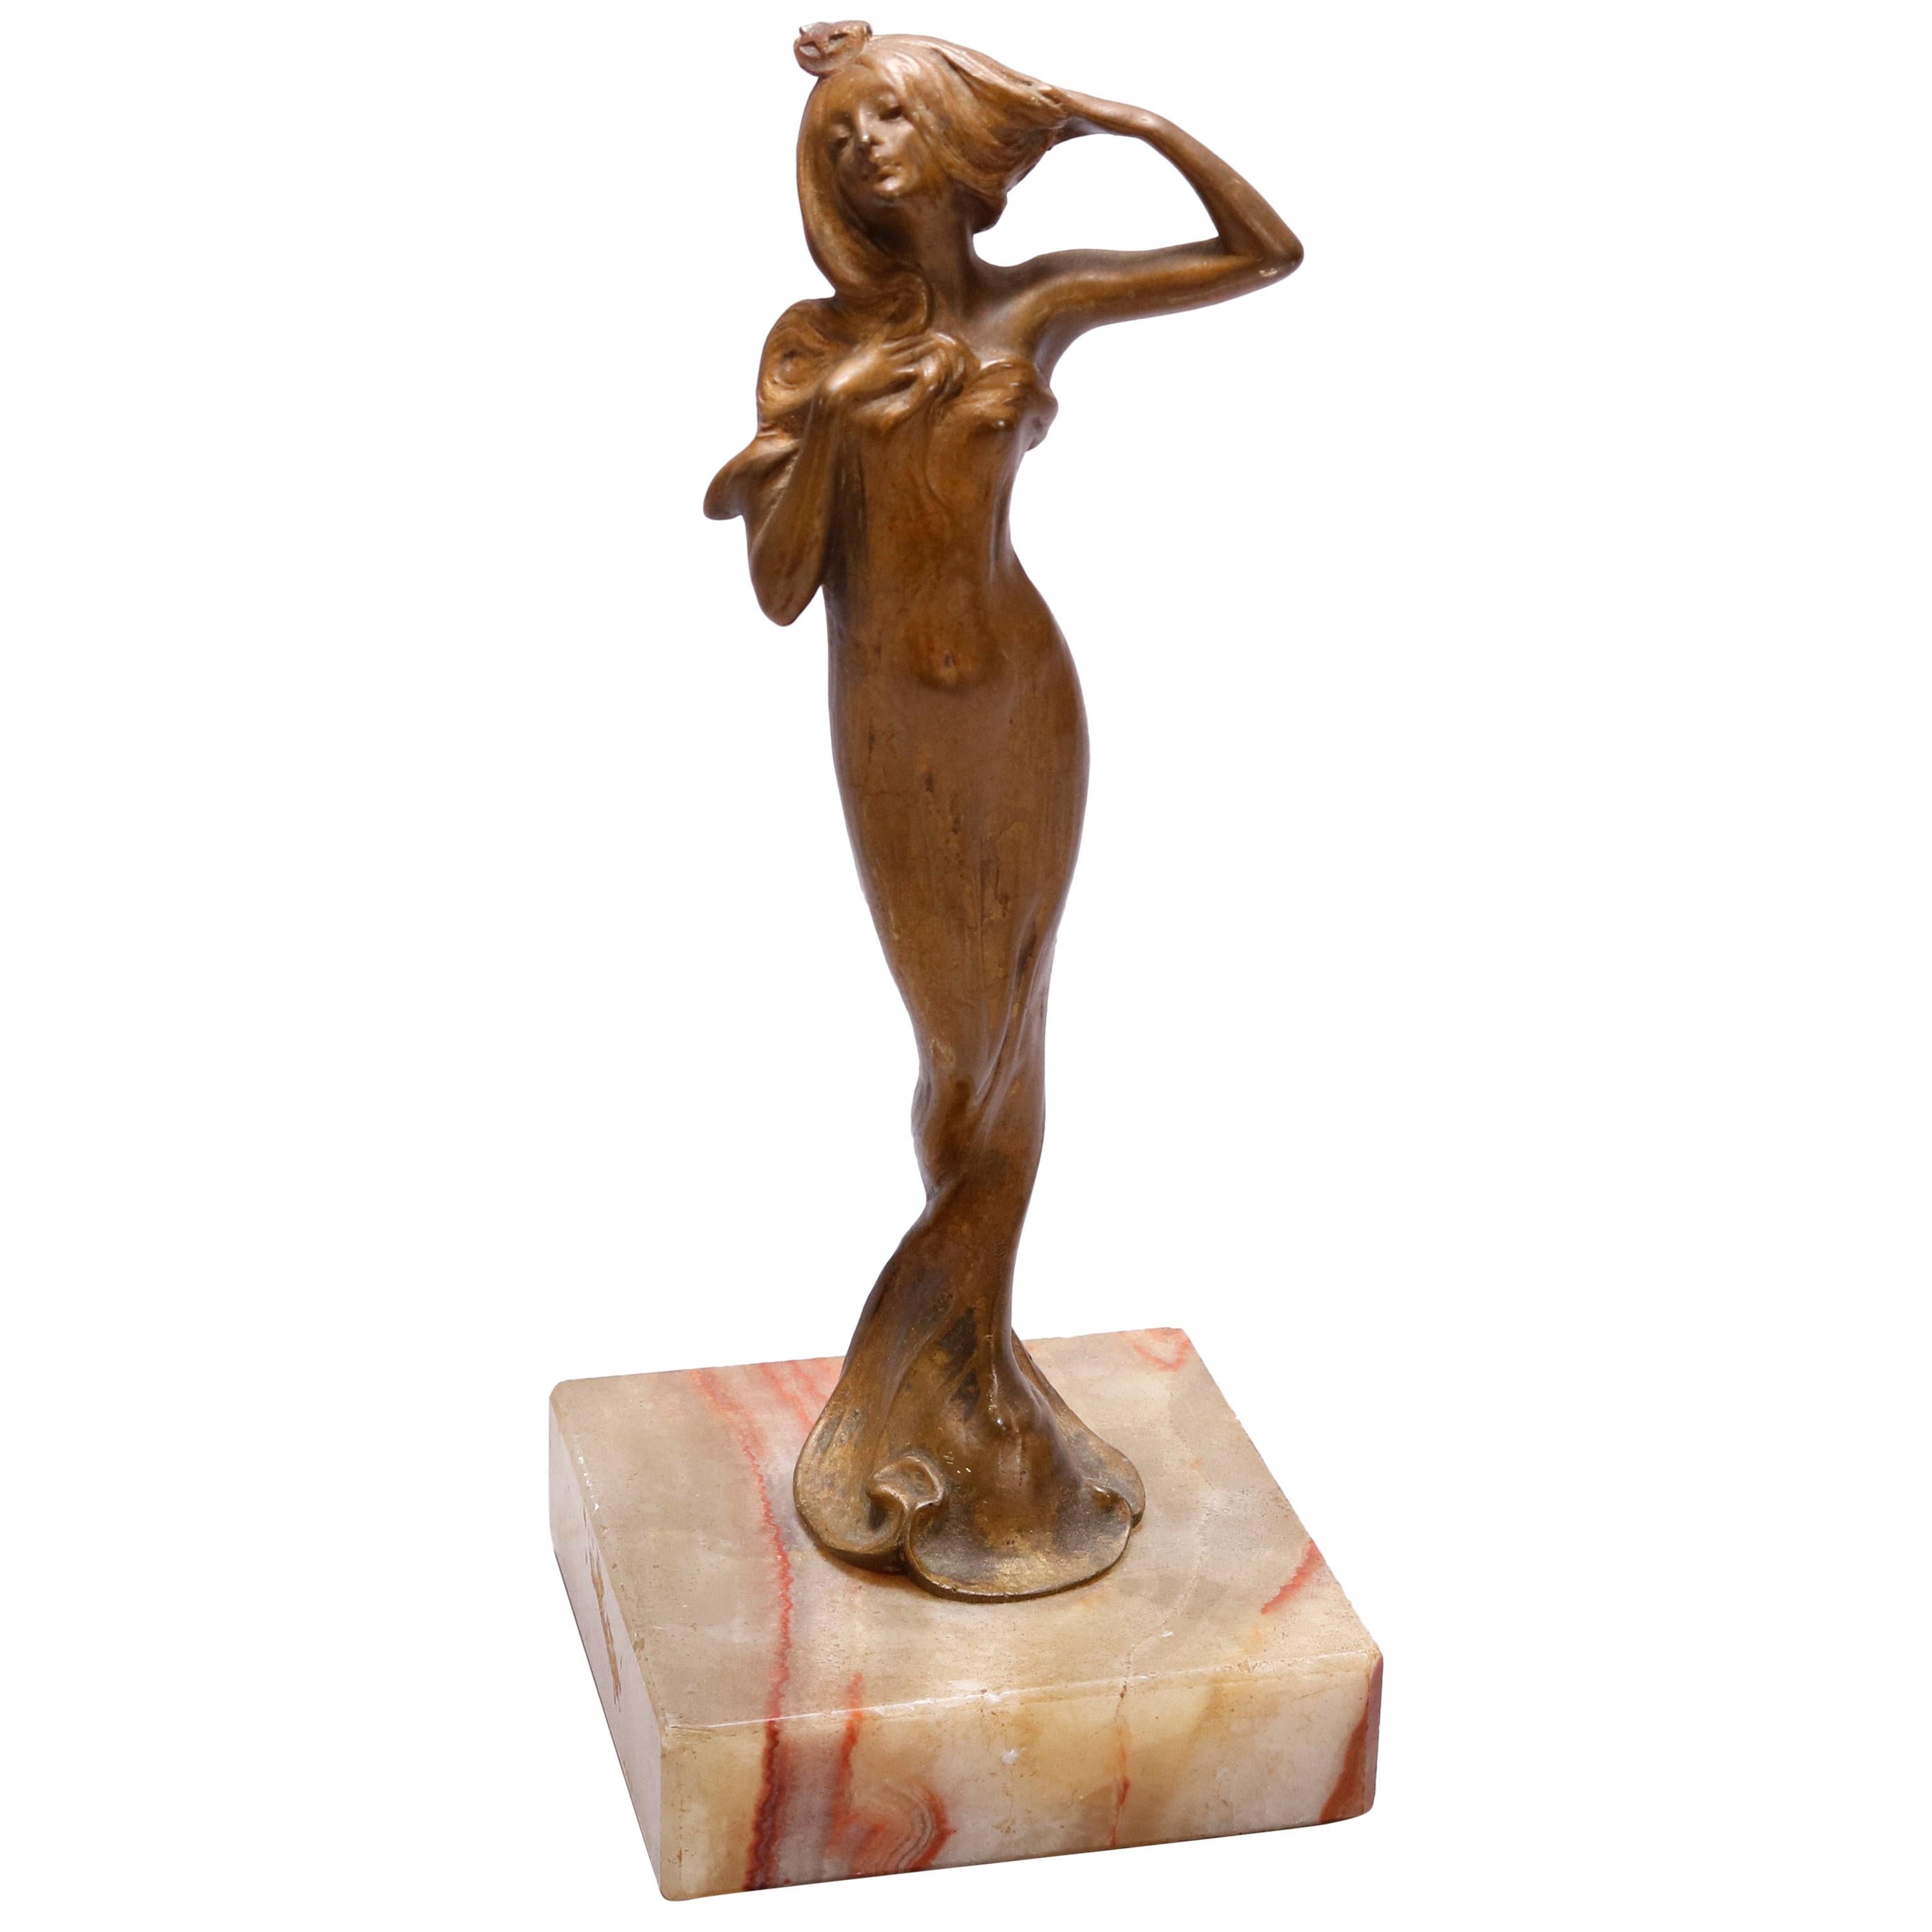 Antique Art Nouveau Figural Cast Bronze Sculpture of Woman on Marble Base